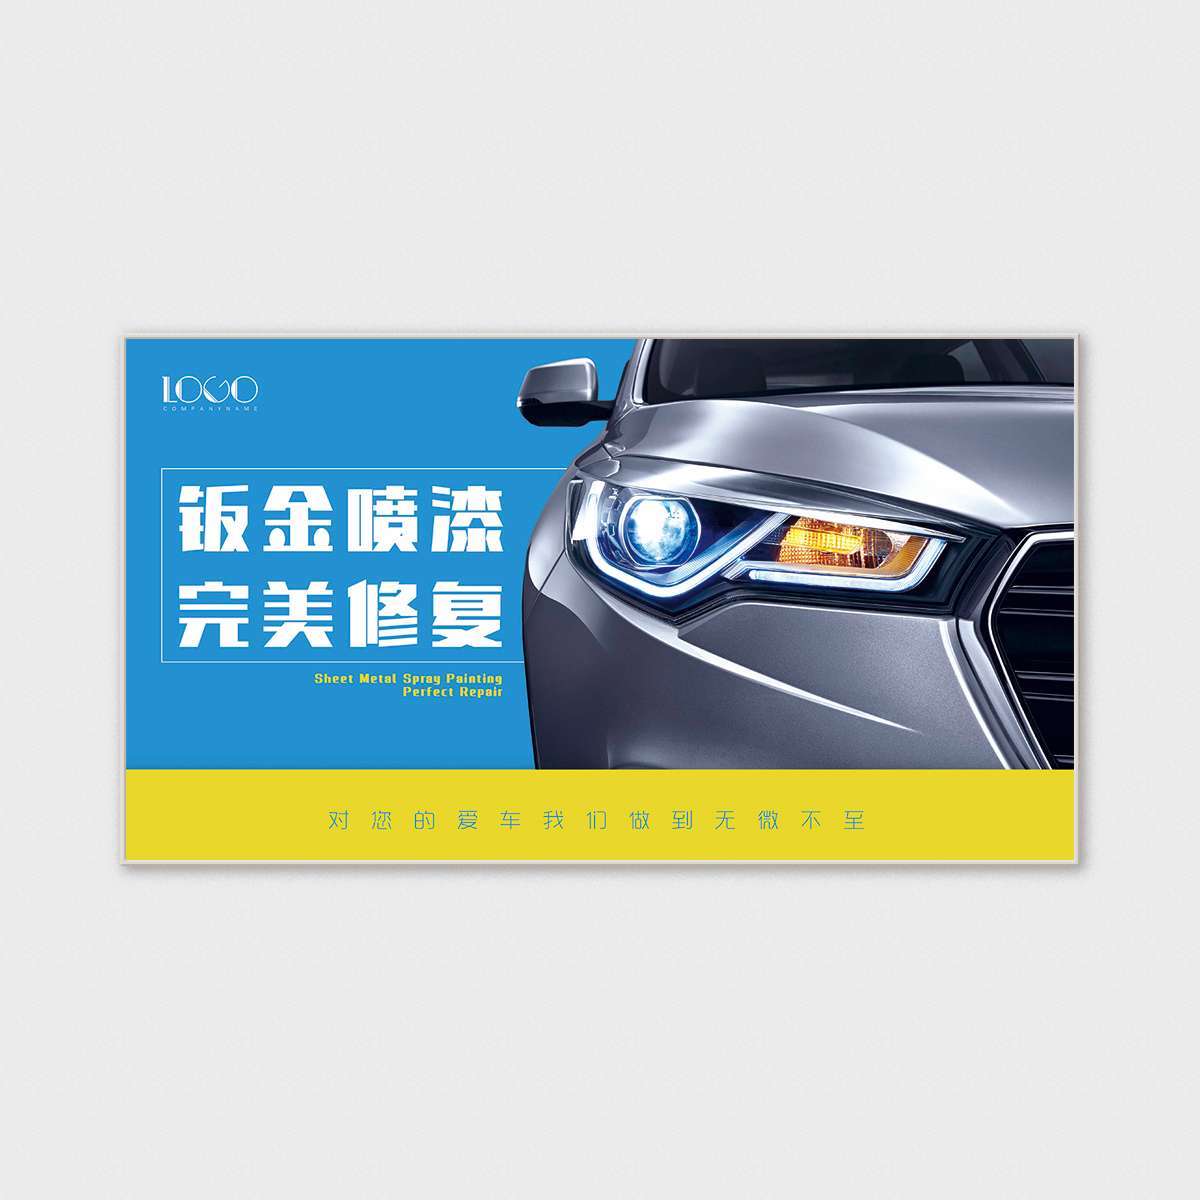 0023黄色蓝色汽车钣金喷漆海报模板-完美修复-900-500mm-铜级-详.jpg